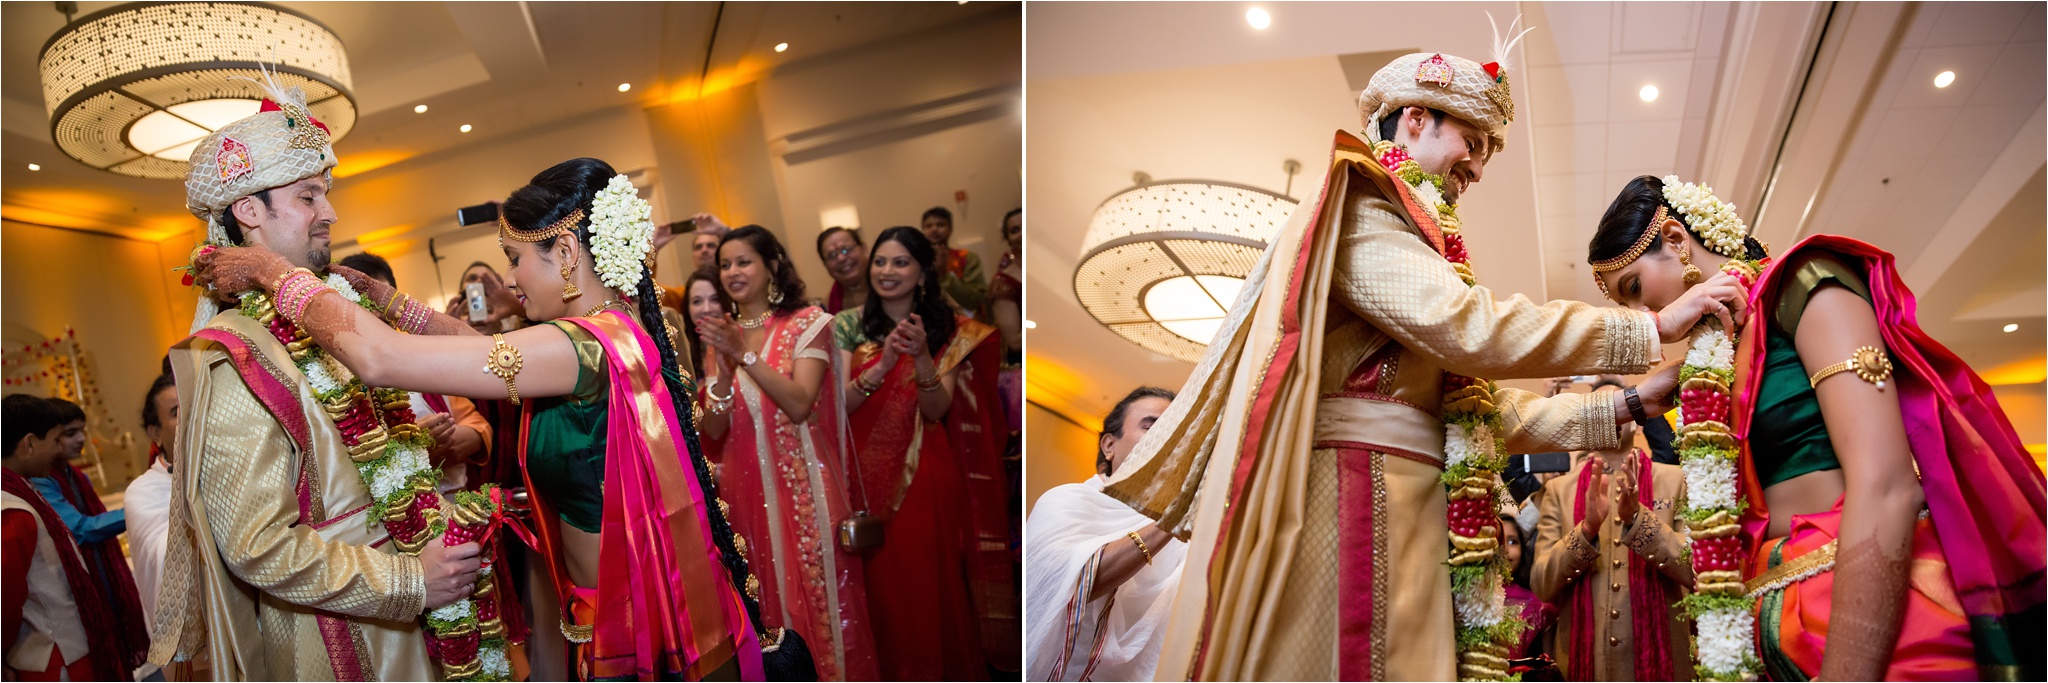 Santa_Clara_Marriott_Indian_Wedding_0019.jpg